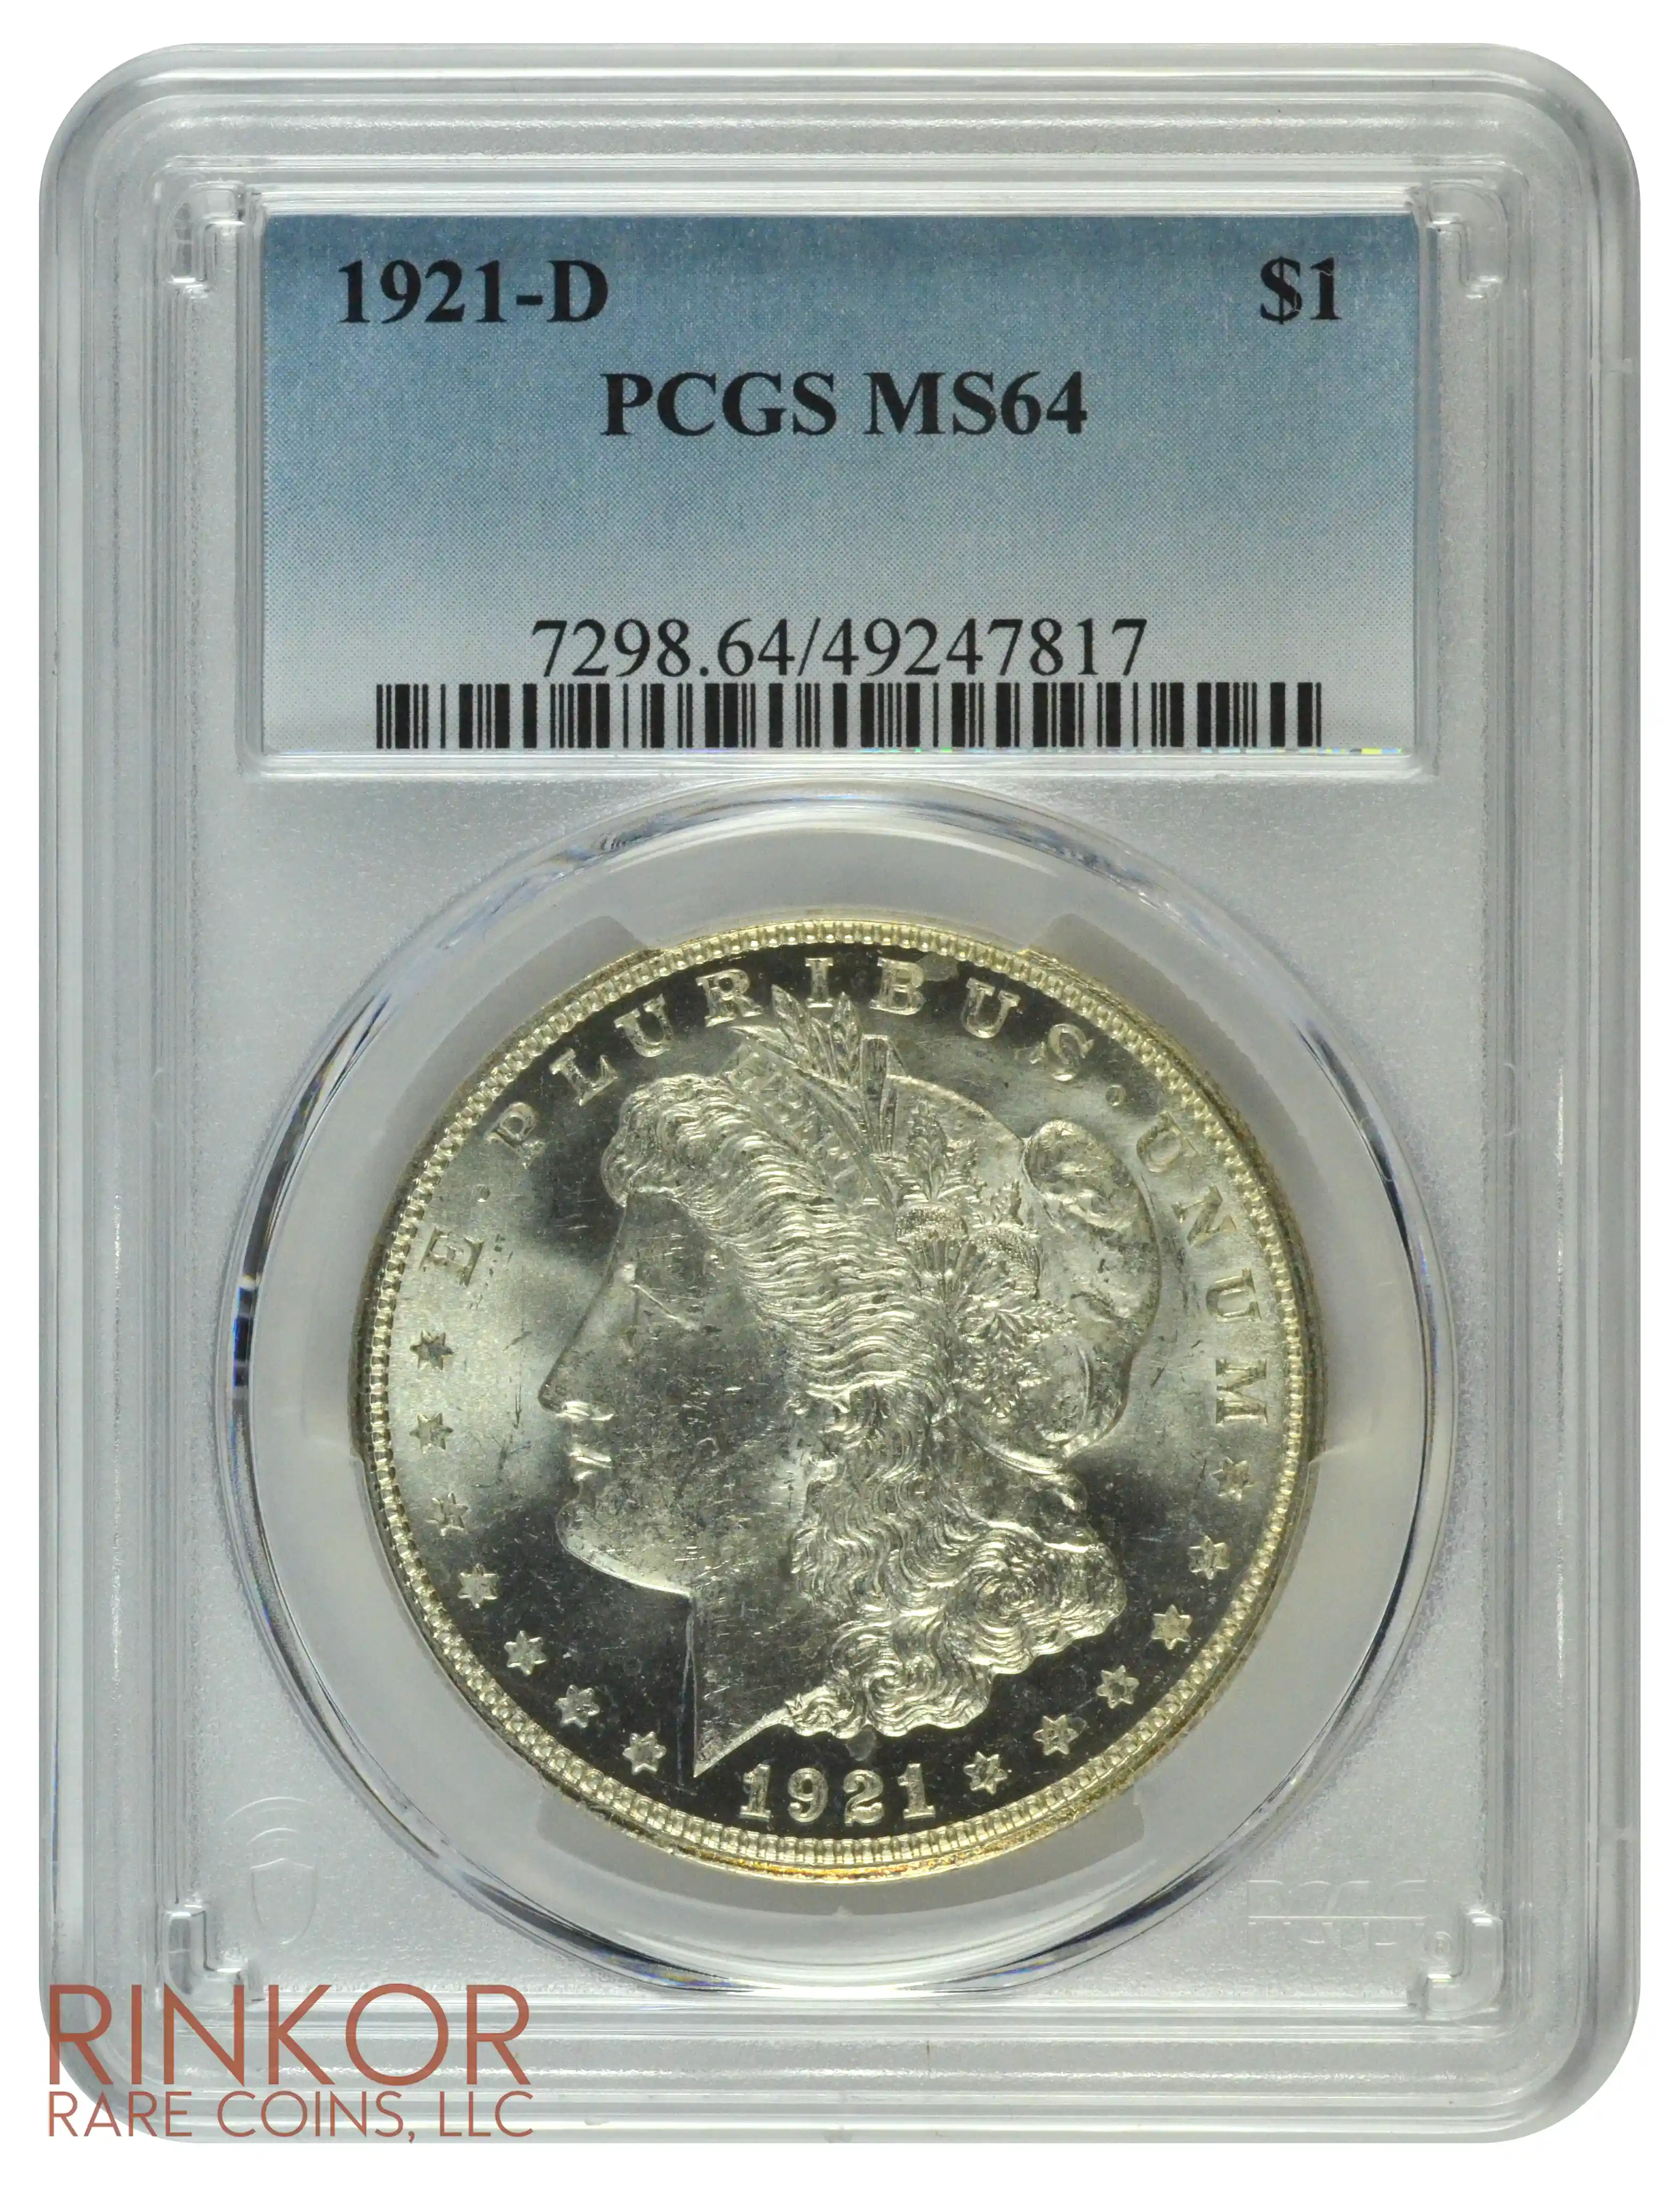 1921-D $1 PCGS MS 64